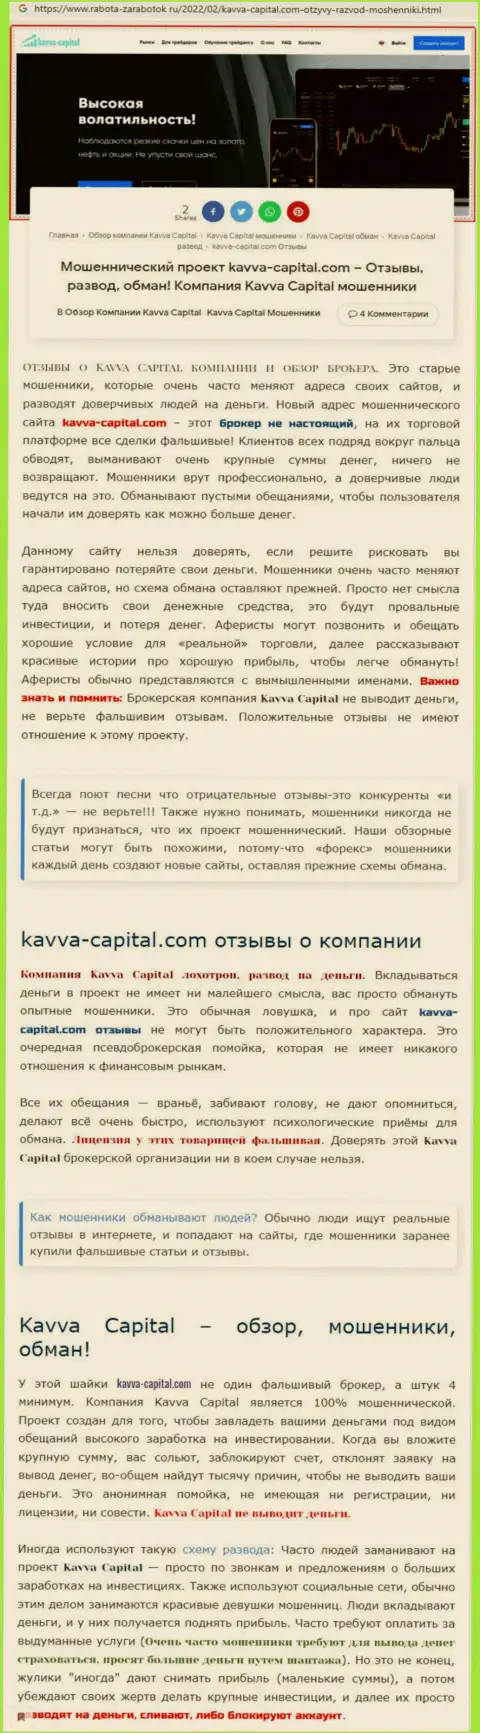 Быстрее выводите финансовые средства из Kavva Capital - КИДАЮТ ! (обзор деятельности мошенников)